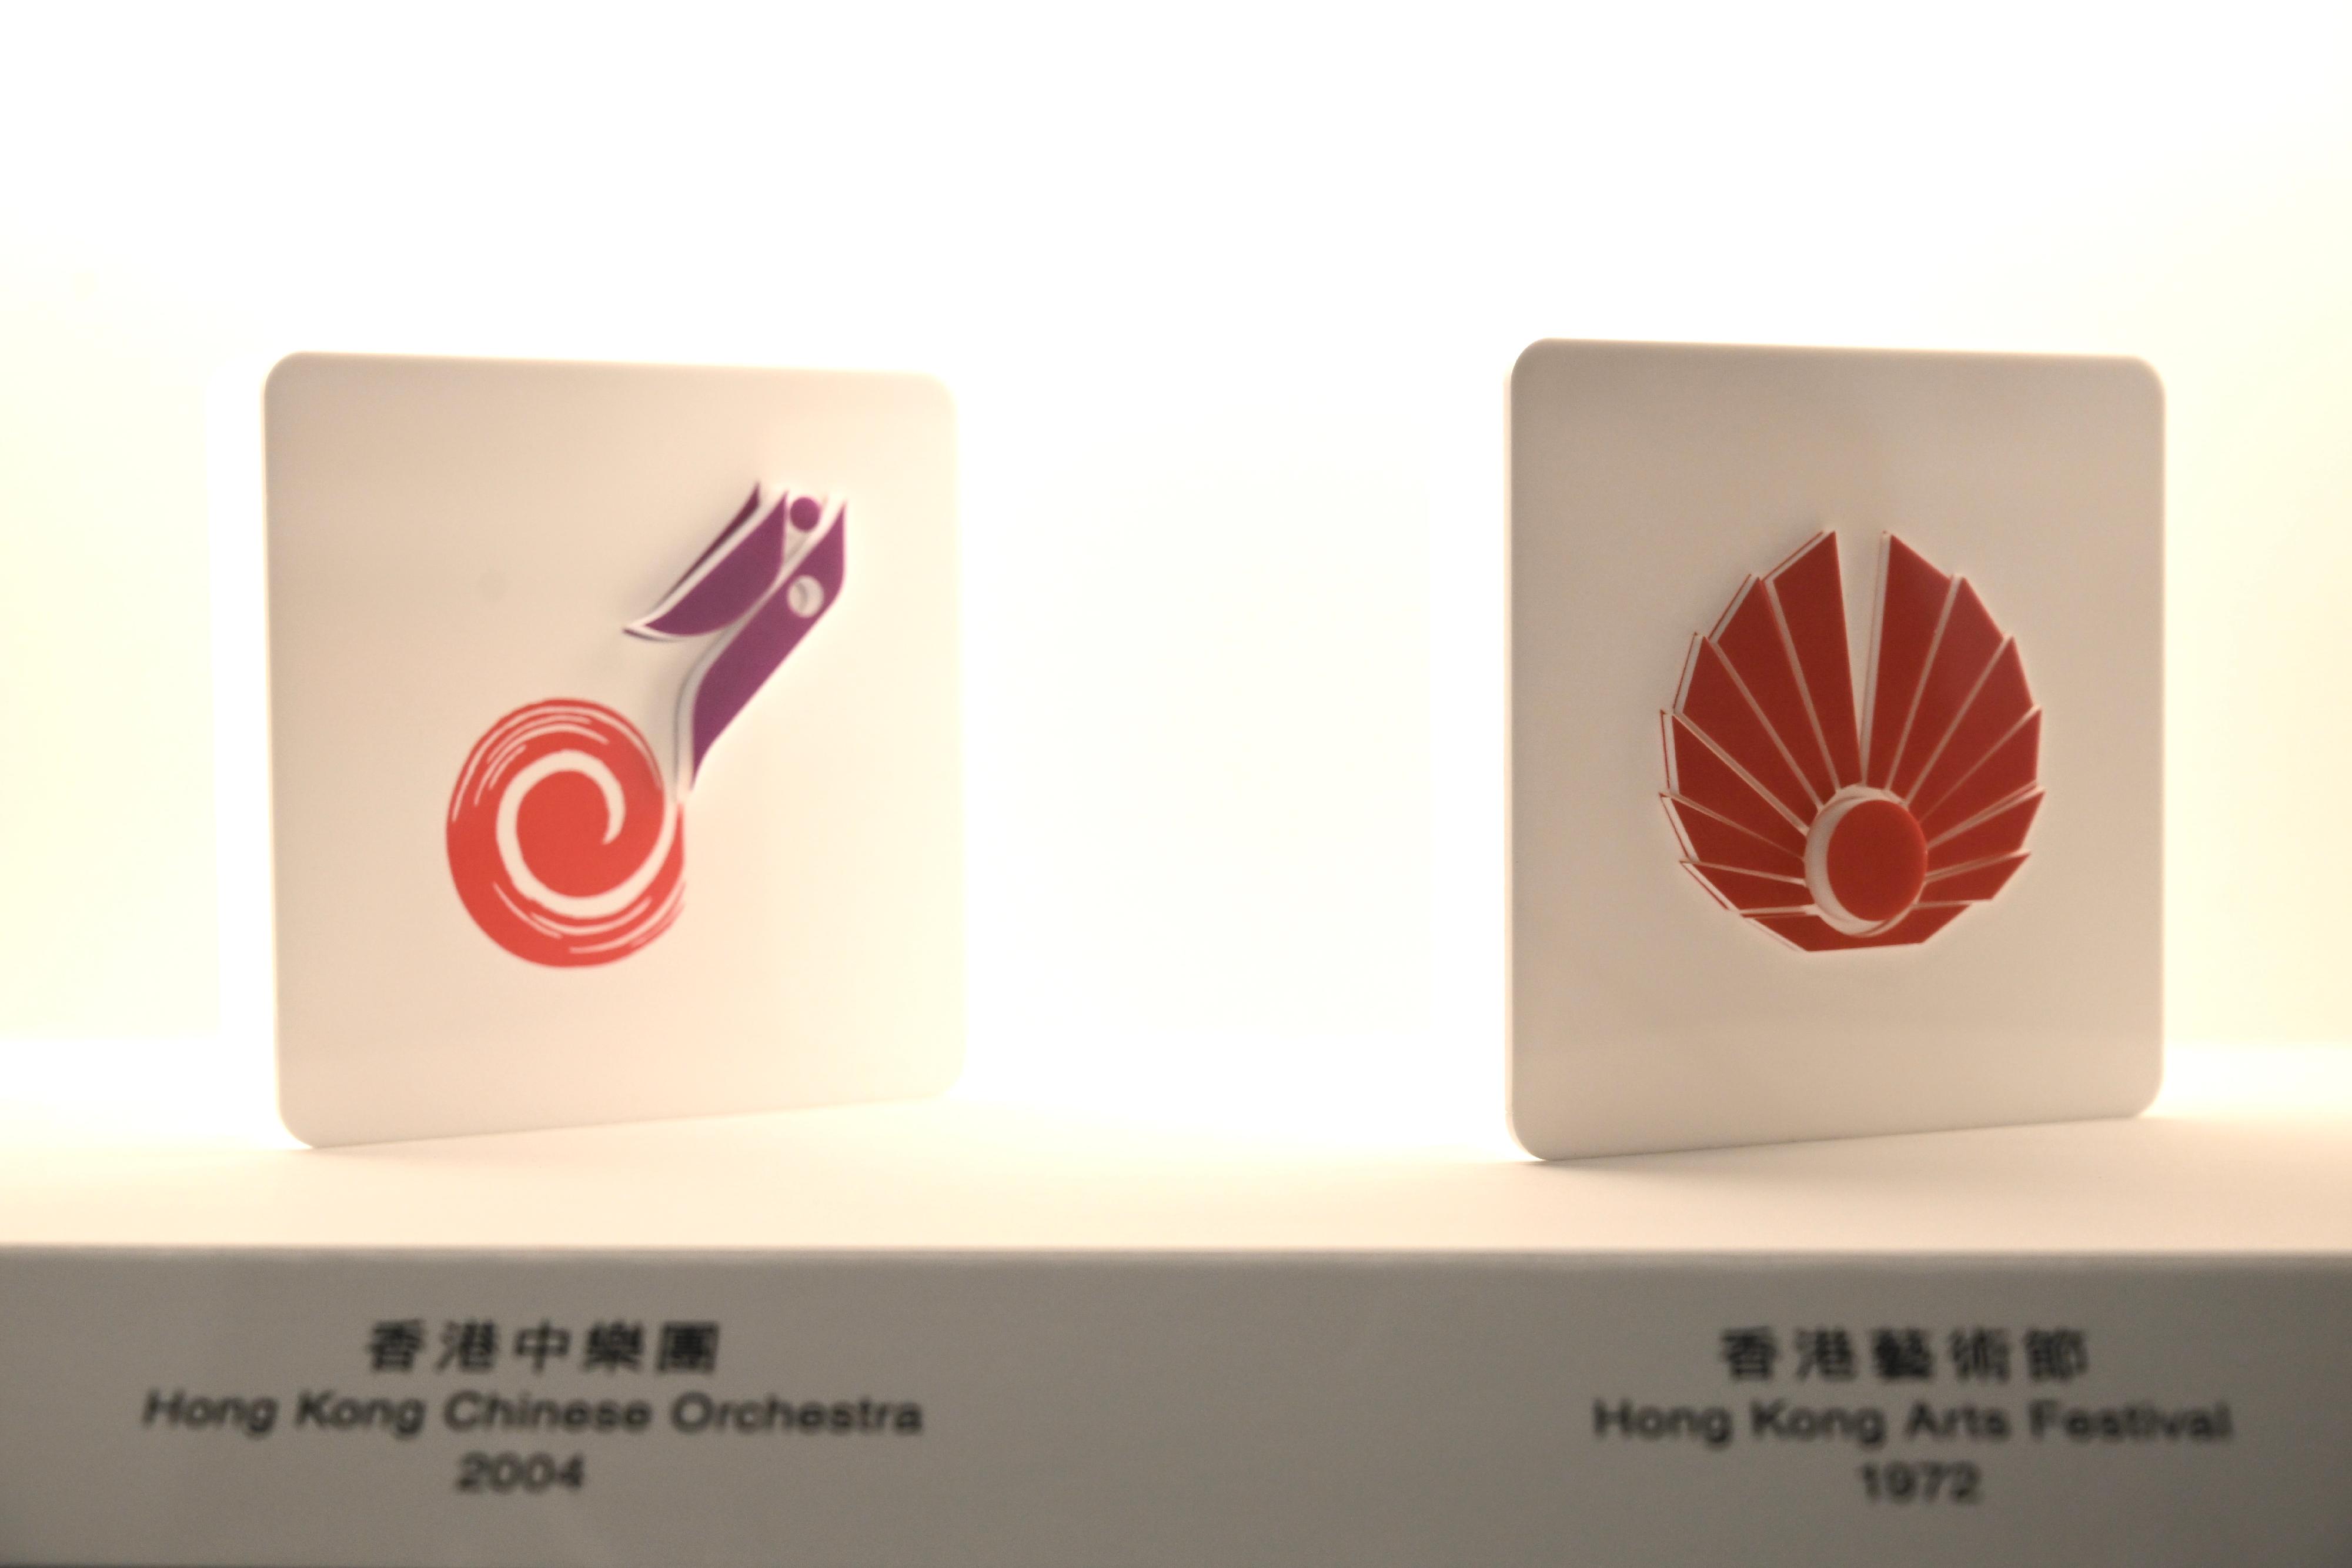 「迁想無界──韓秉華藝術與設計展」開幕典禮今日（十一月十四日）在香港文化博物館舉行。圖示香港中樂團（左）和香港藝術節（右）的標誌設計。